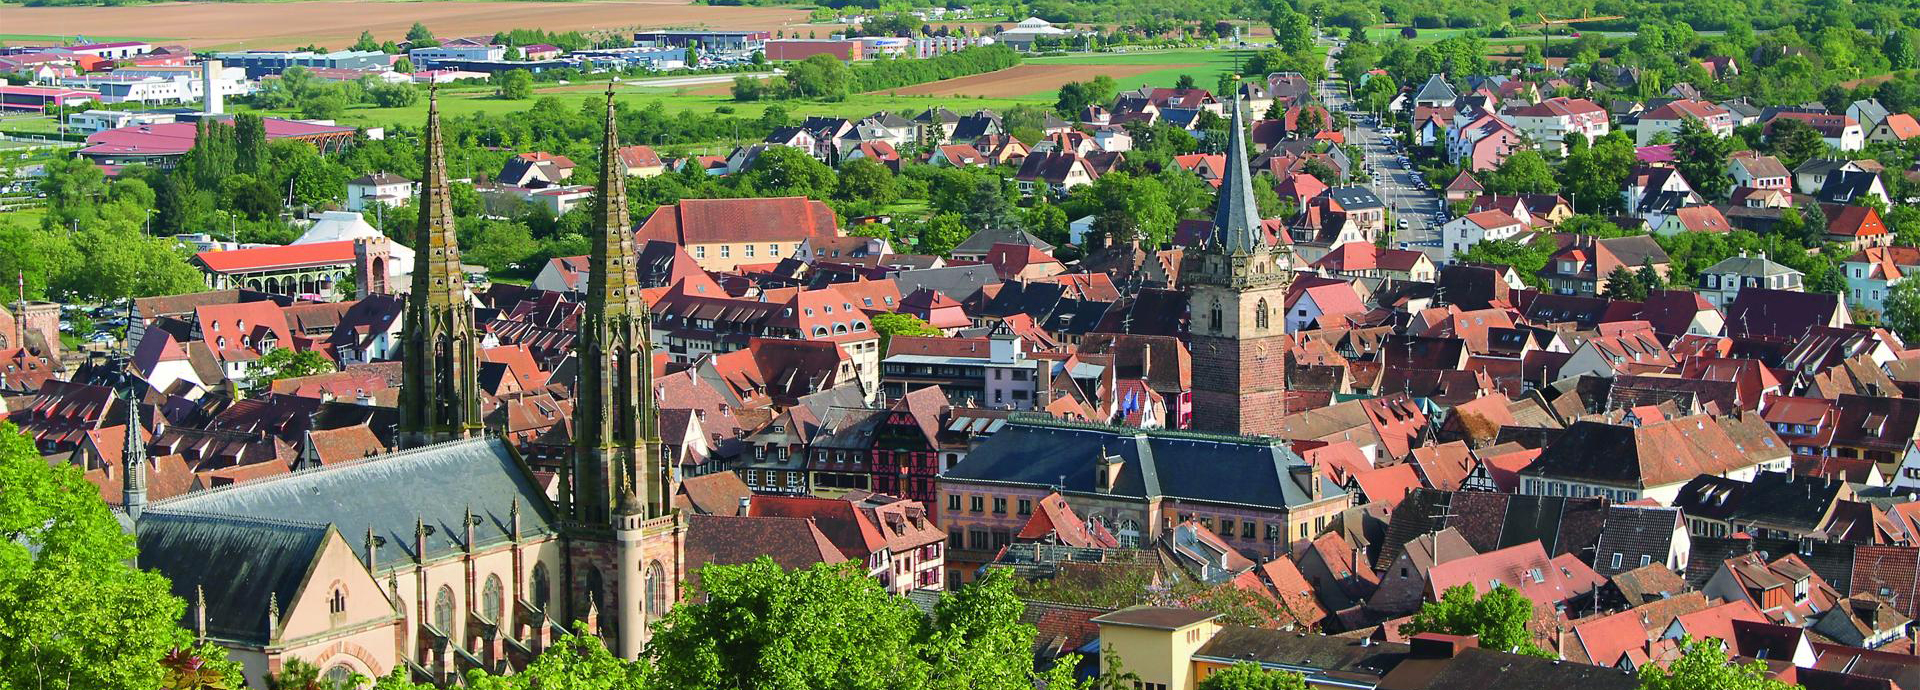 Obernai, haut-lieu touristique de l’Alsace